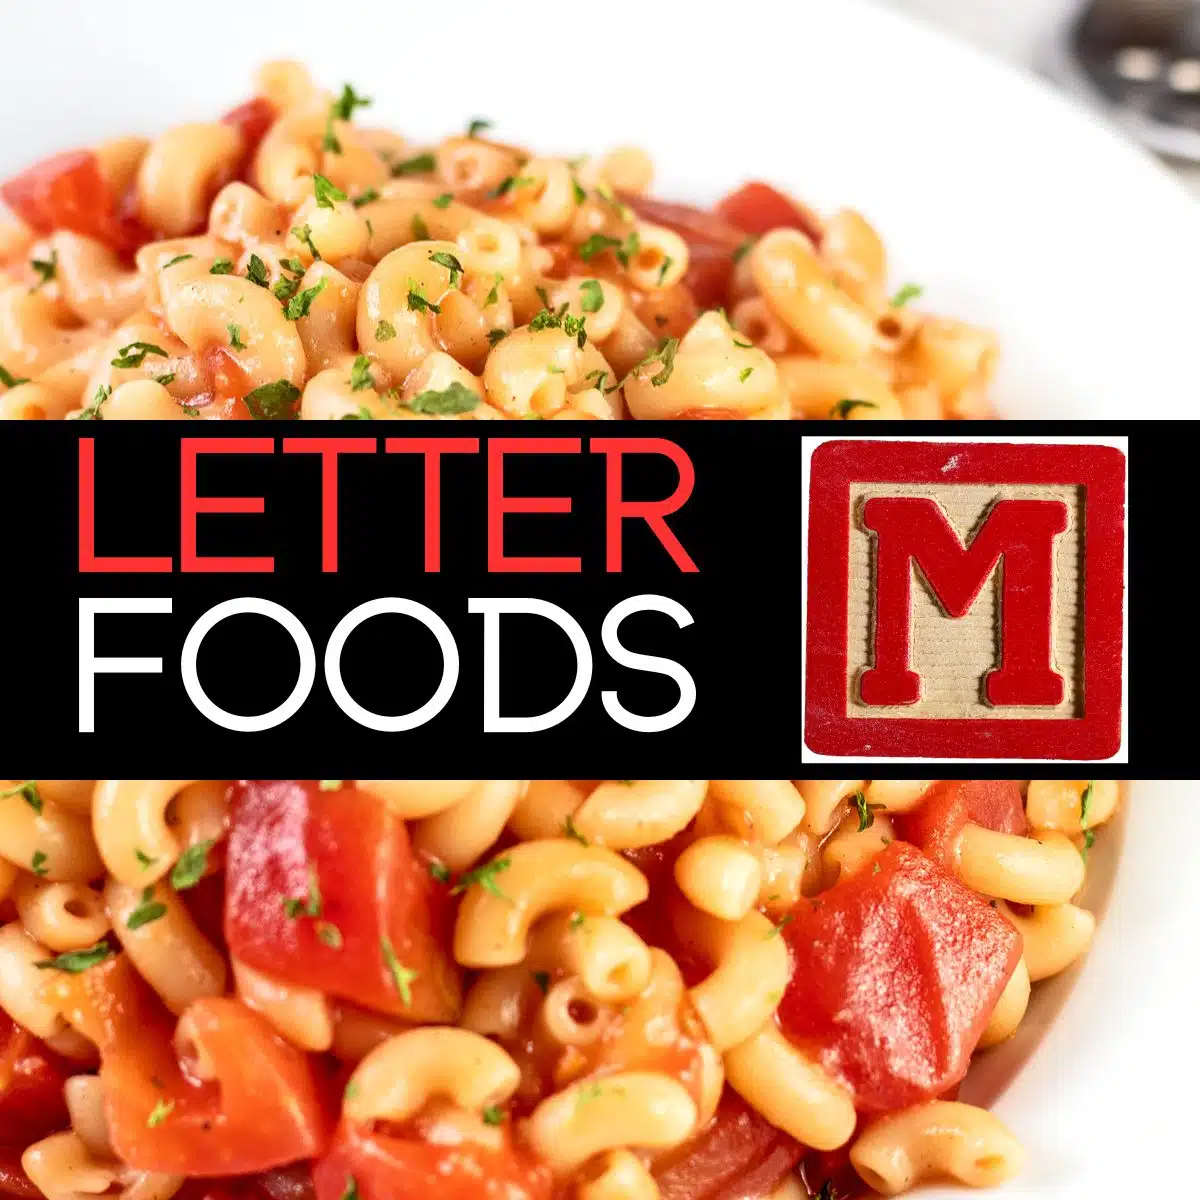 Quadratisches Bild für Lebensmittel, die mit dem Buchstaben M beginnen und Makkaroni zeigt.